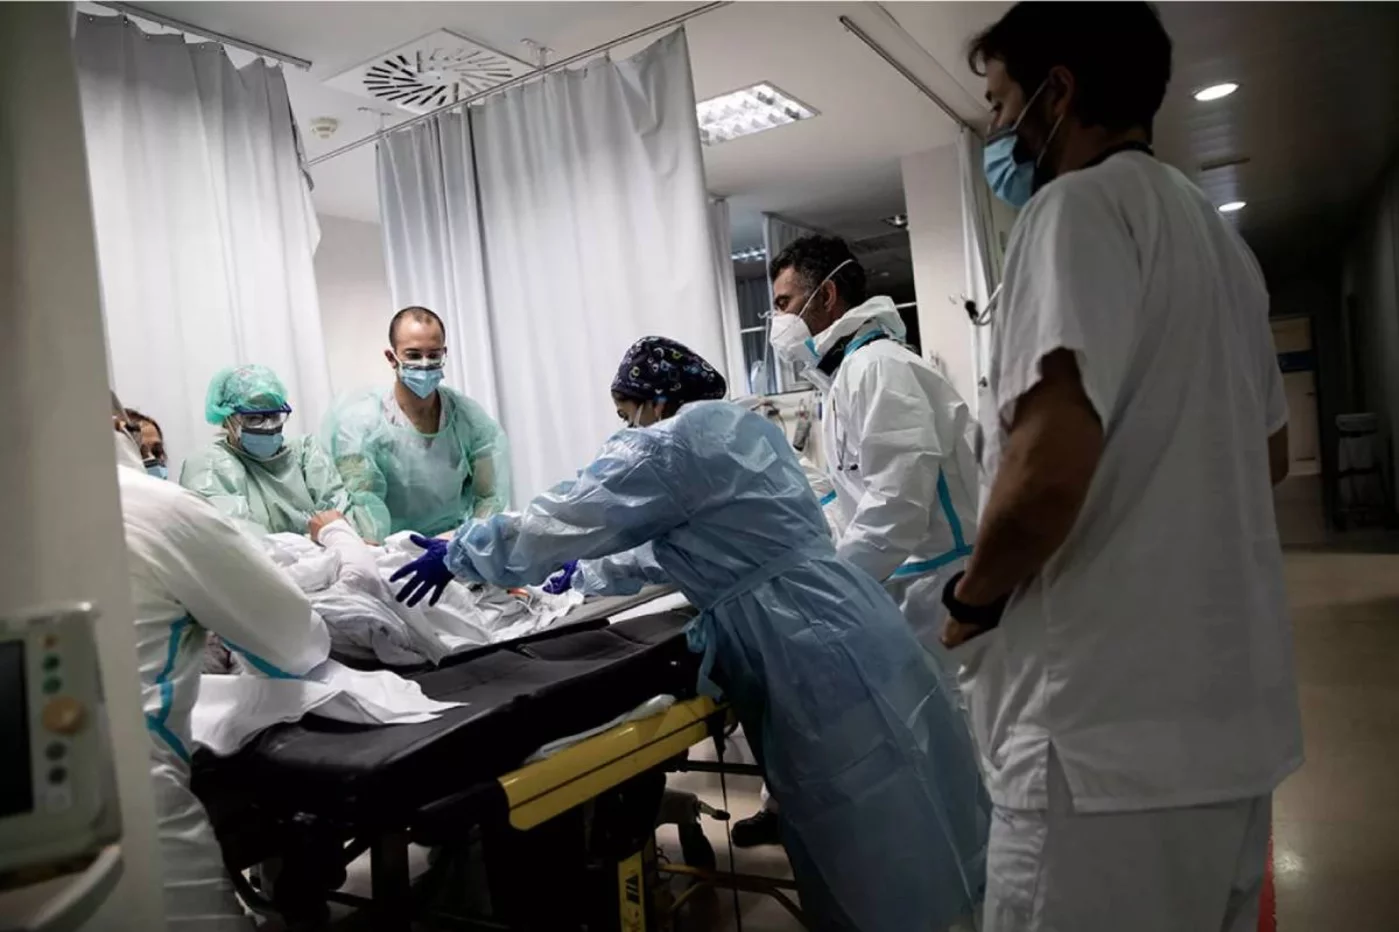 Médicos de Urgencias atienden un posible caso de covid en el servicio de un hospital madrileño. Foto: ALBERTO DI LOLLI